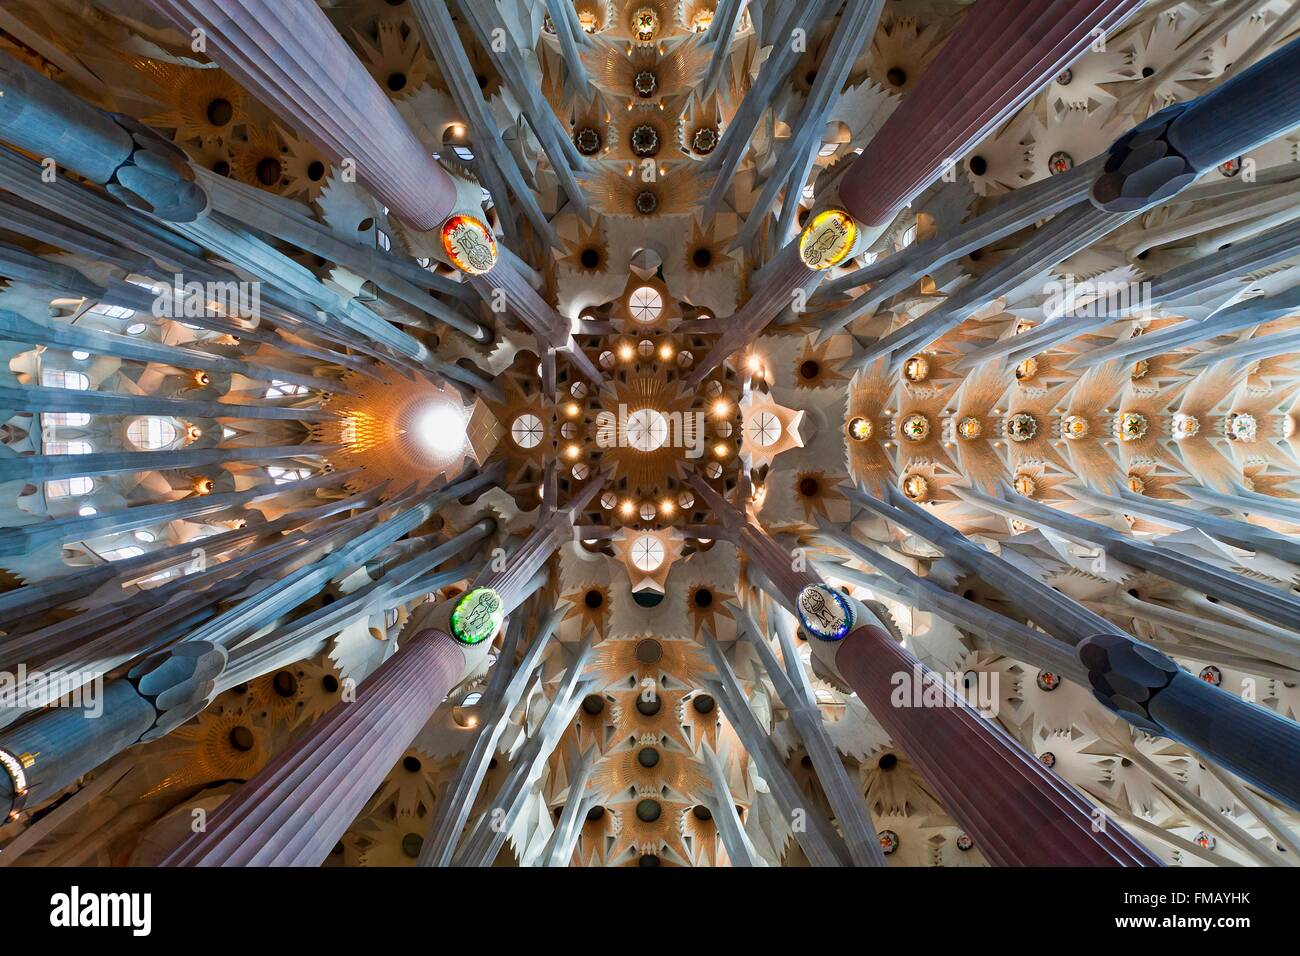 Spanien, Katalonien, Barcelona, Kathedrale Sagrada Familia von der UNESCO als Welterbe gelistet Stockfoto